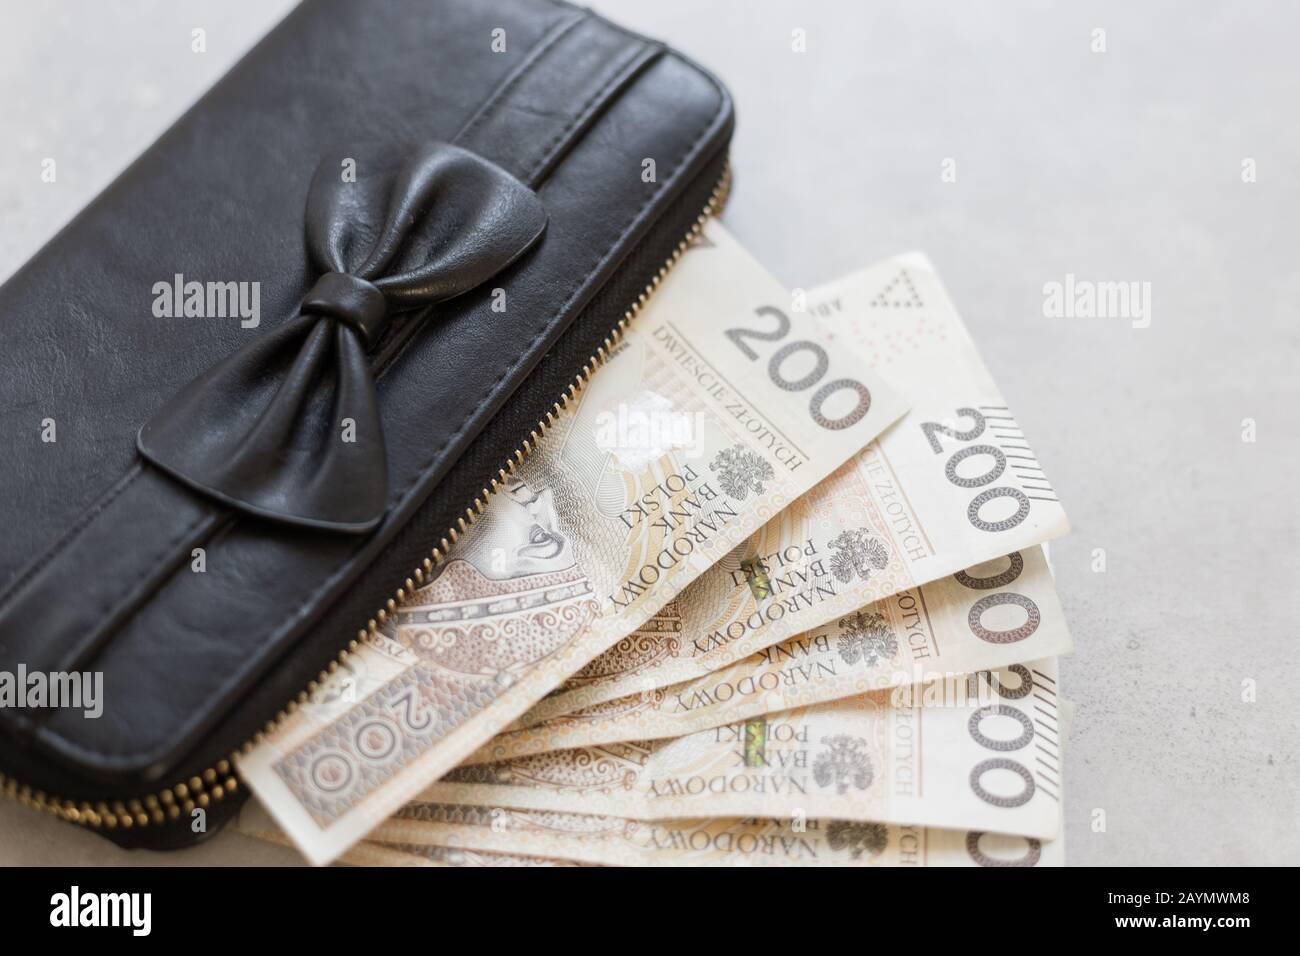 Riche fille ou femme de Pologne, joli porte-monnaie noir avec un noeud,  plein d'argent poli Photo Stock - Alamy